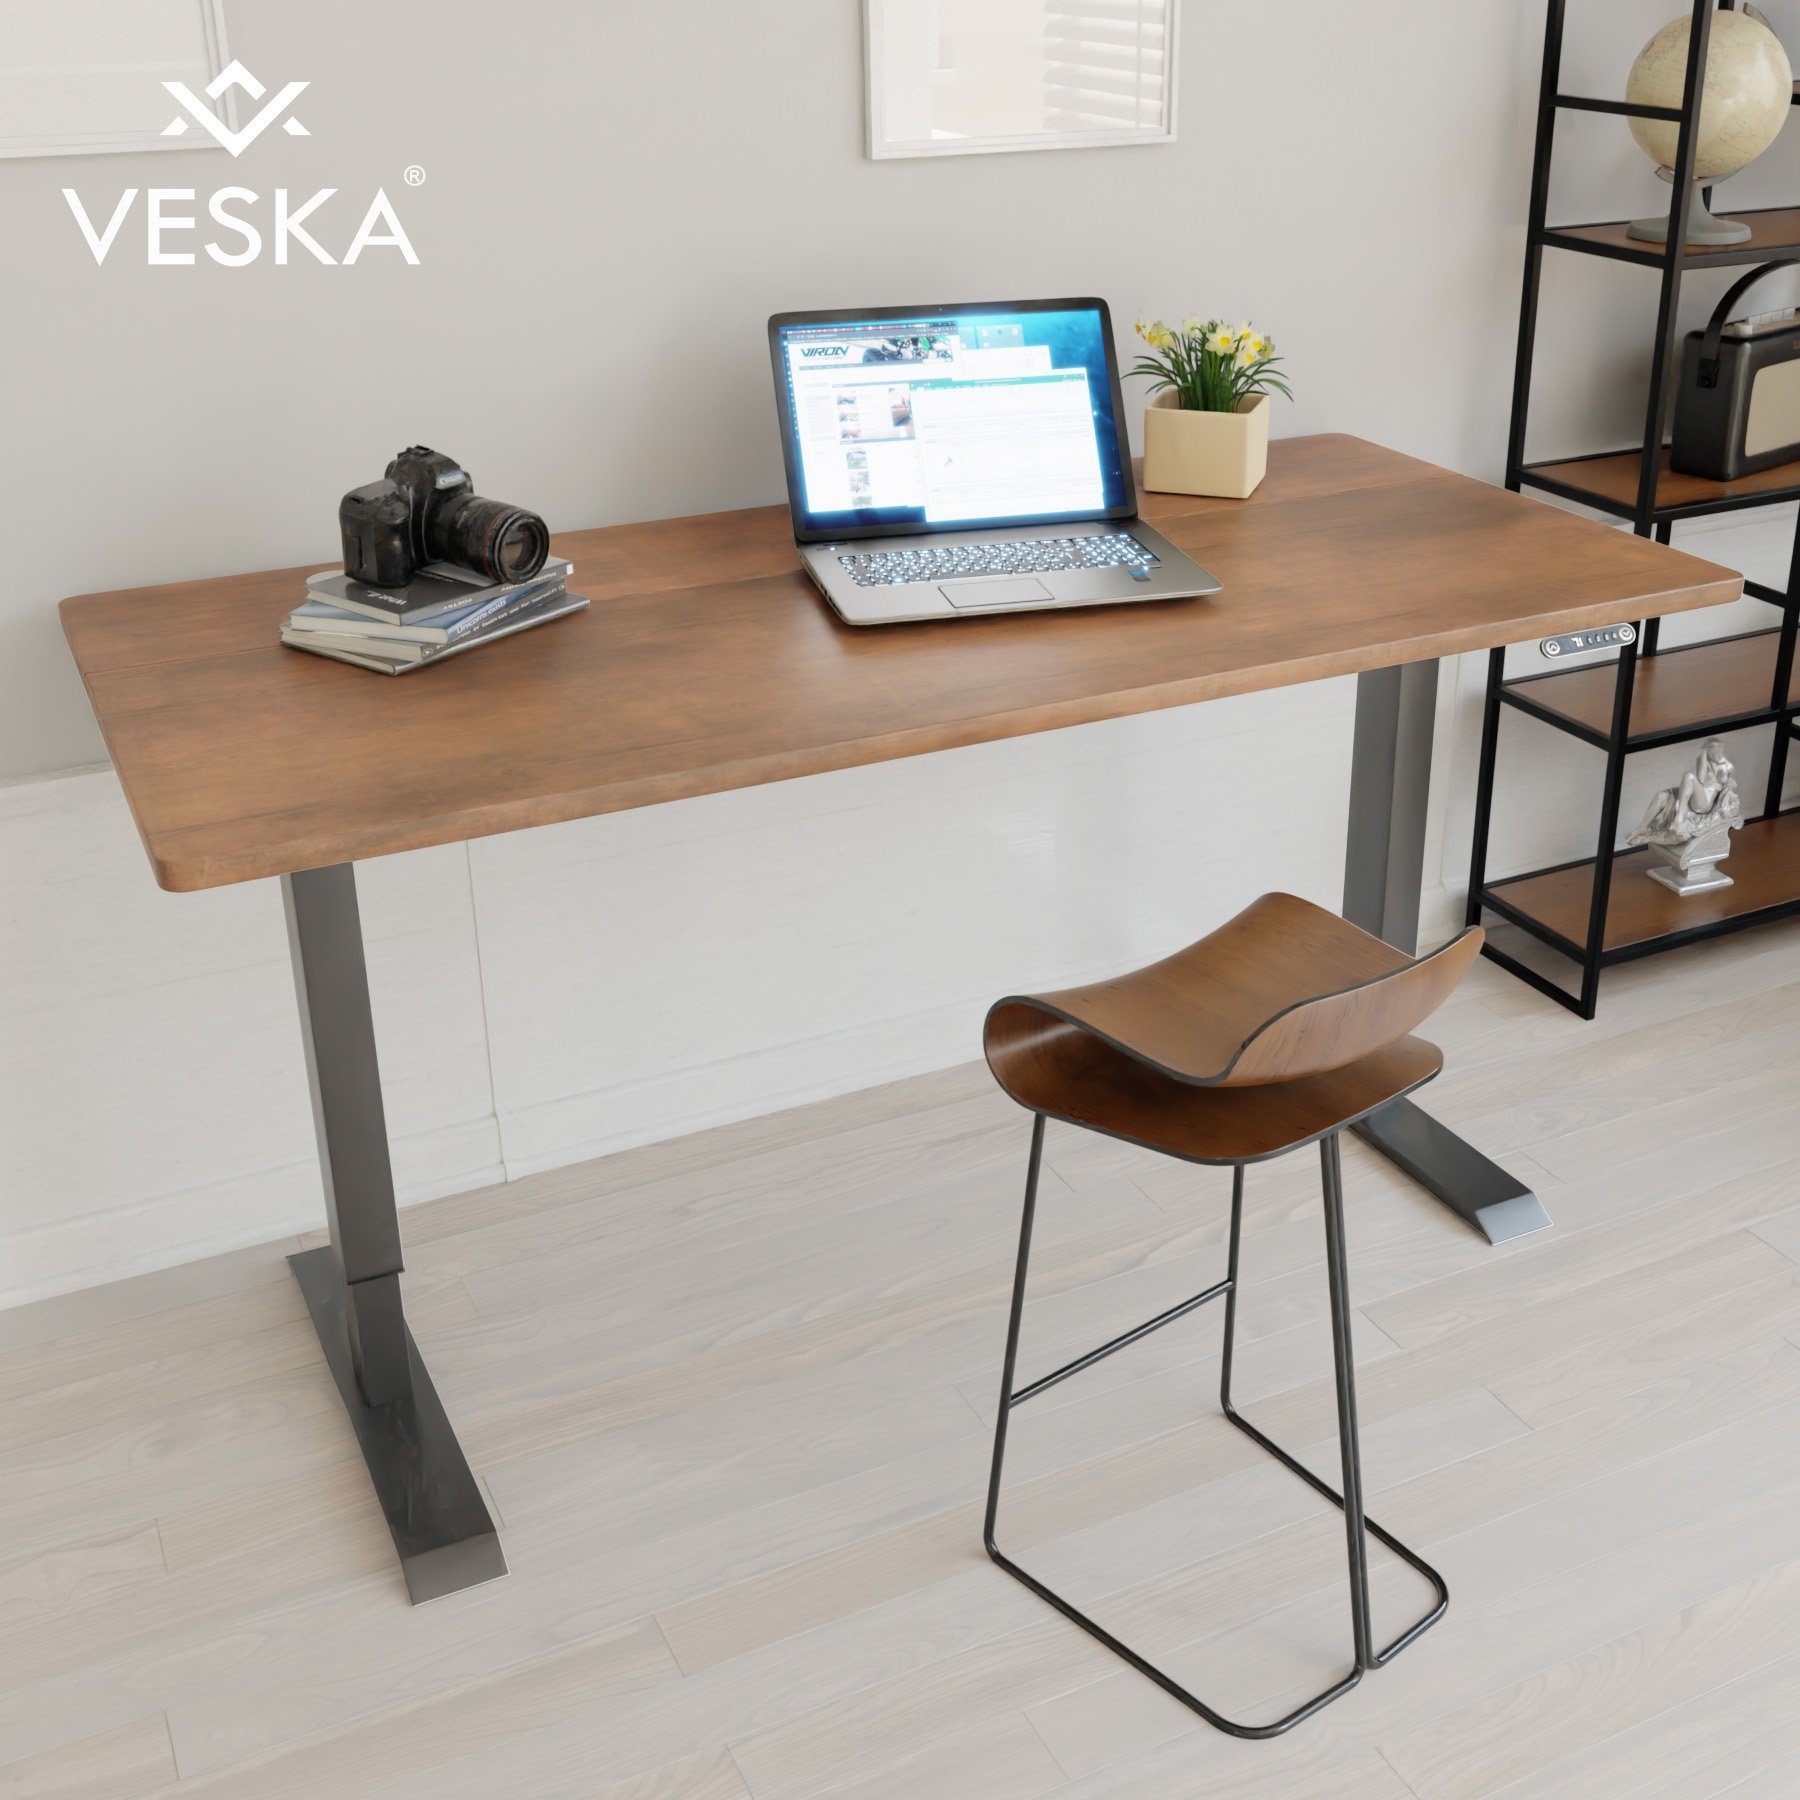 VESKA Schreibtisch Höhenverstellbar 140 x 70 cm - Bürotisch Elektrisch mit Touchscreen - Sitz- & Stehpult Home Office